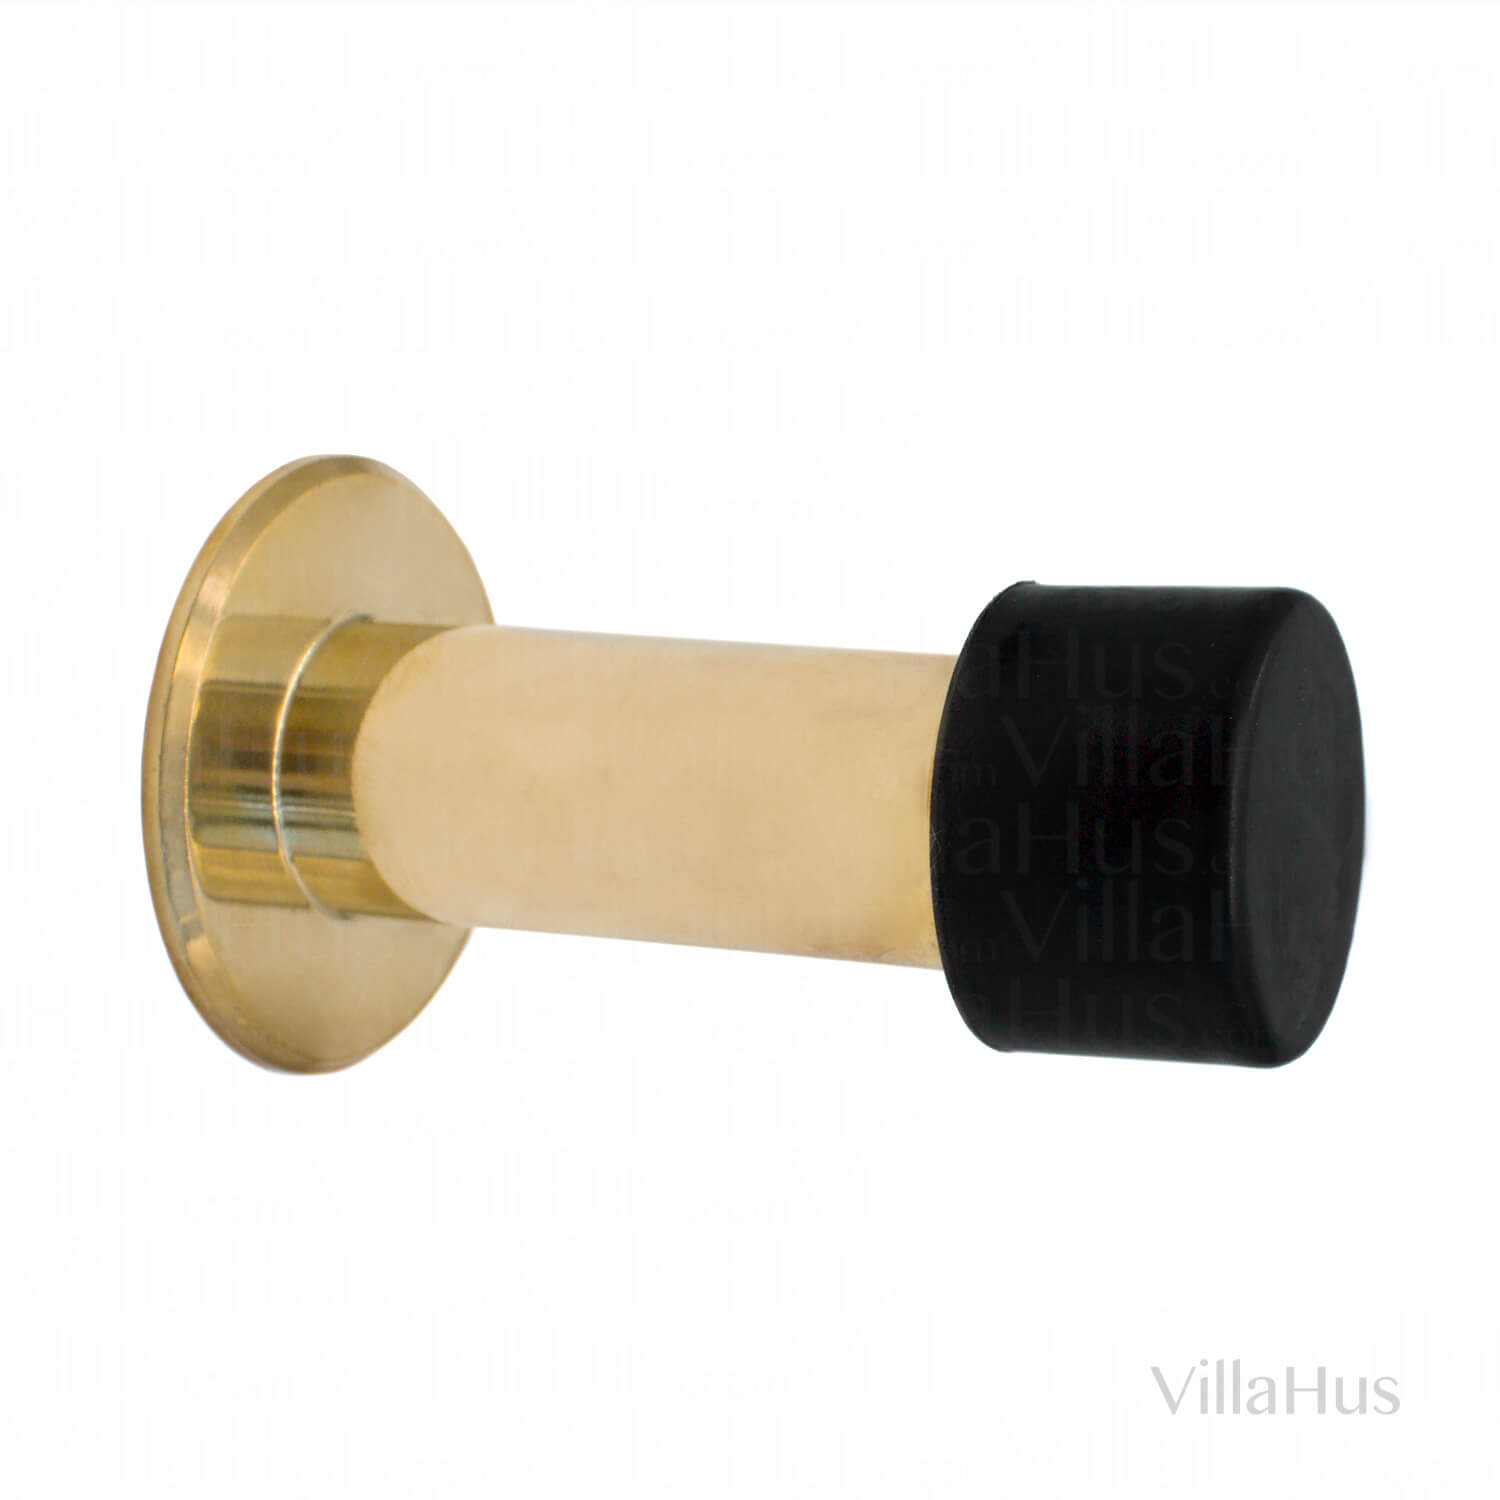 budbringer klarhed fotoelektrisk Door stopper - Polished brass / Black rubber - Model 1601 - Door Stops -  VillaHus